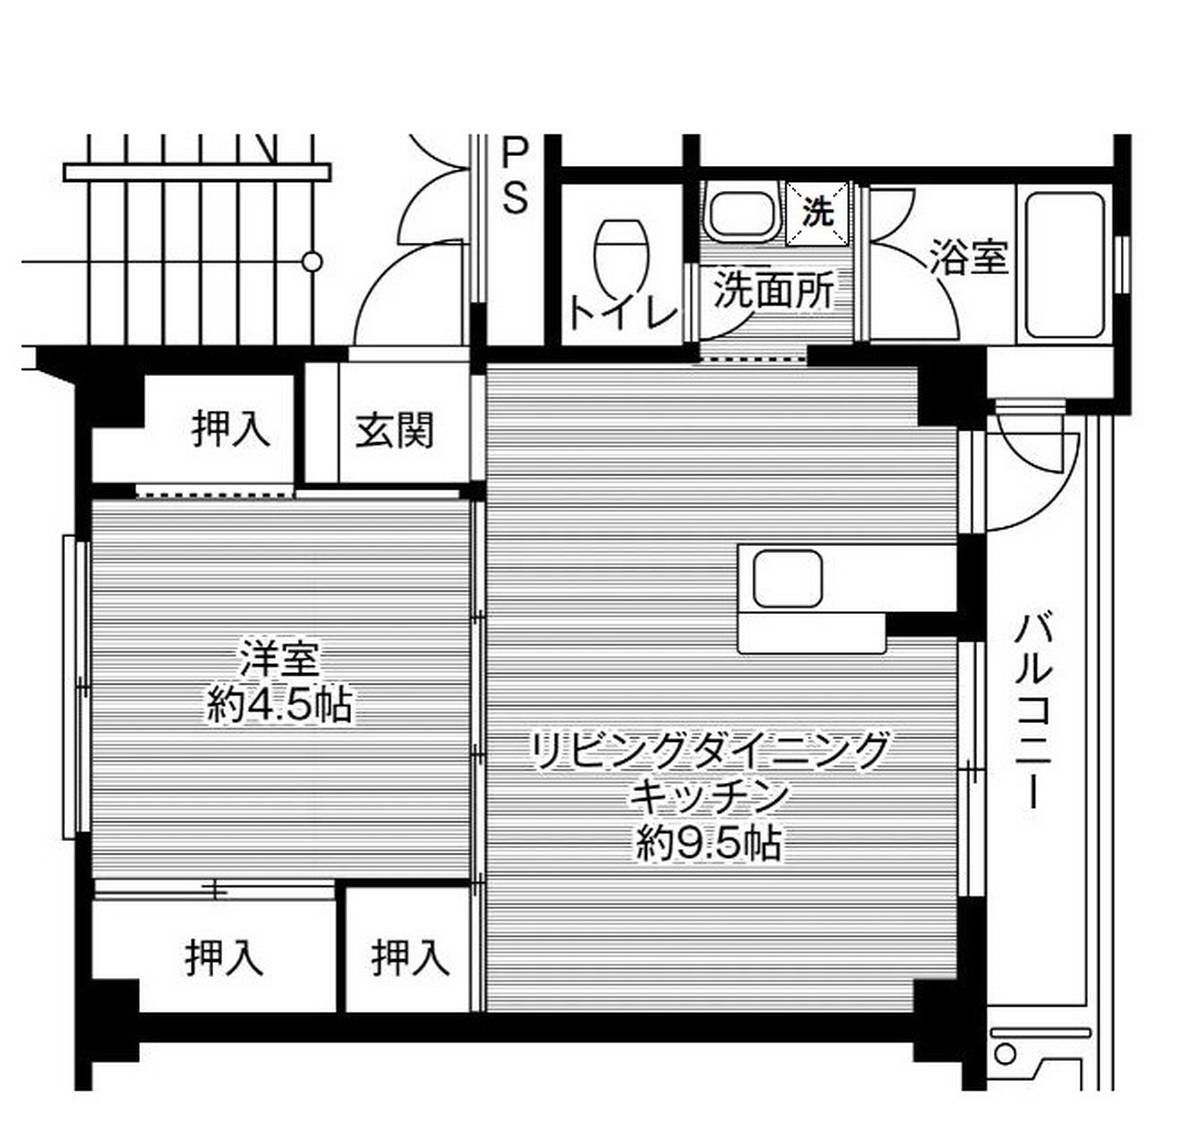 1LDK floorplan of Village House Noke in Sawara-ku